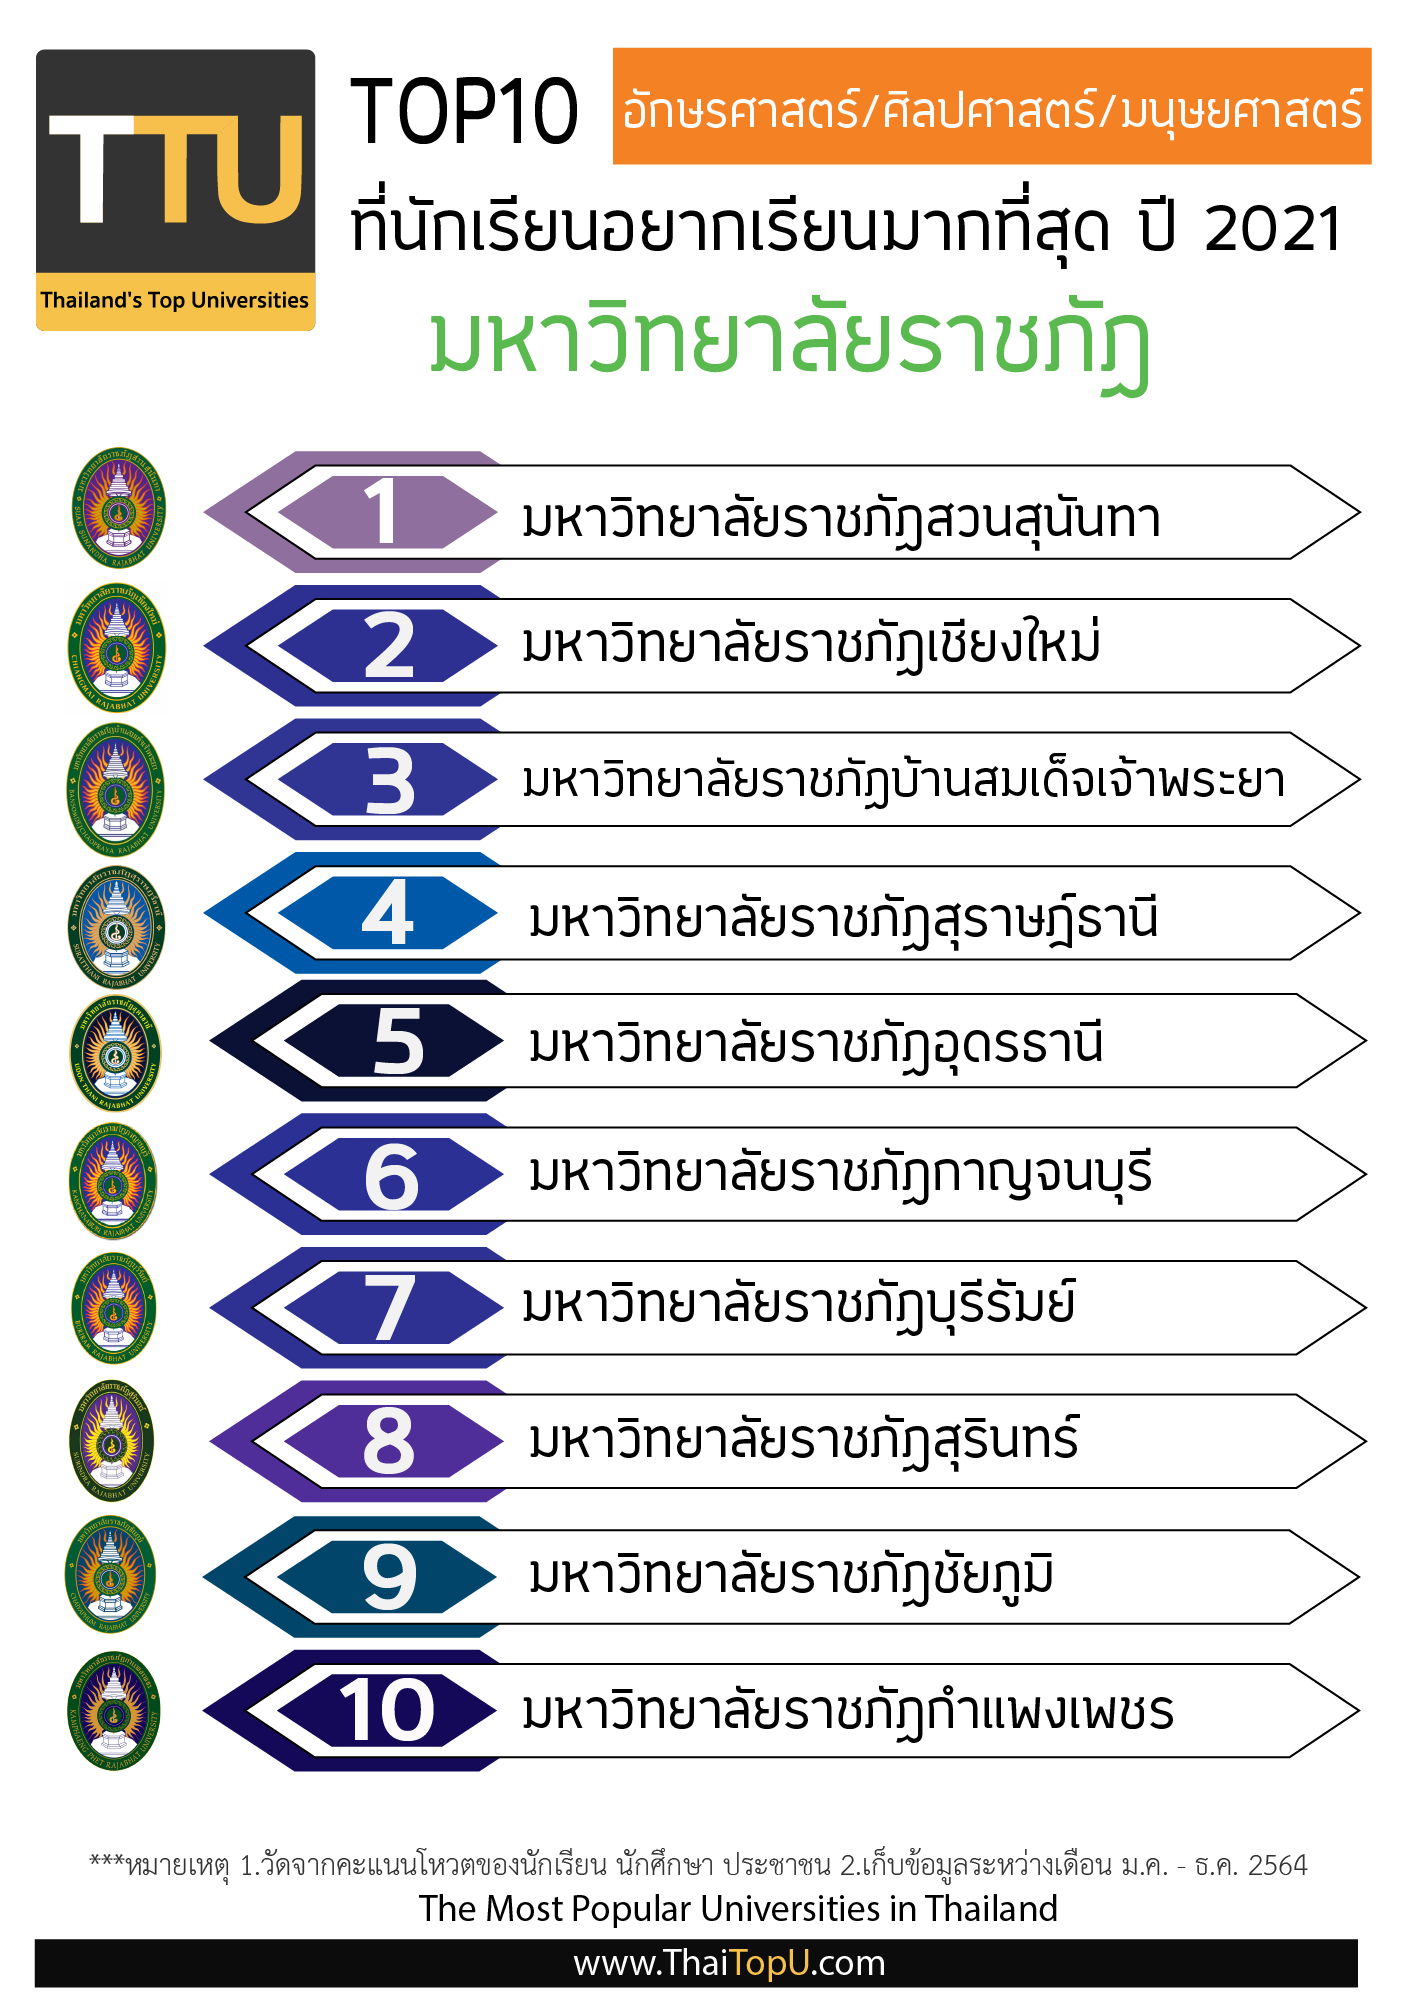 Thailand Top Universities